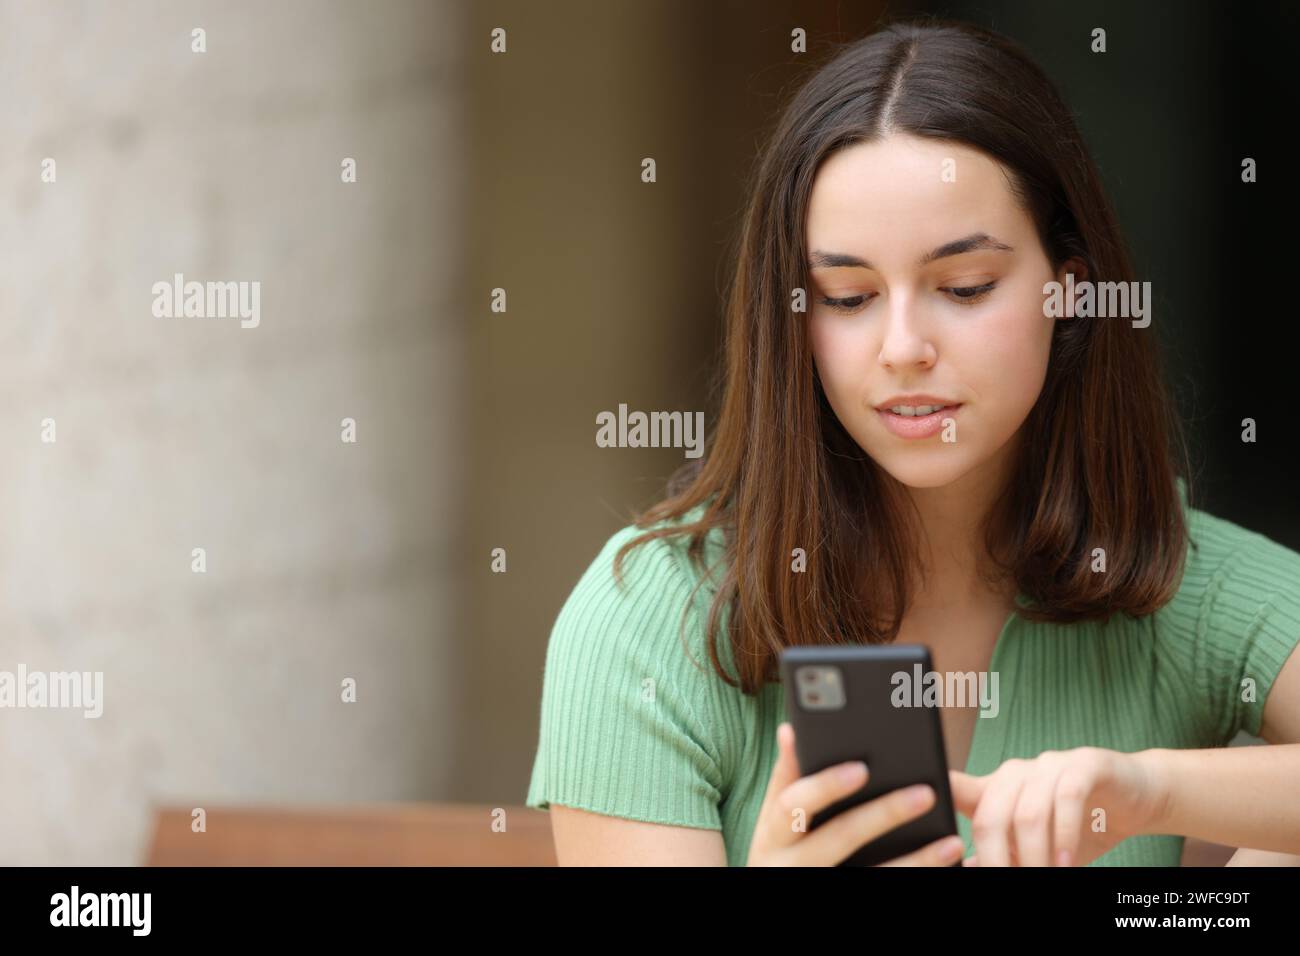 Vista frontale di una donna che controlla uno smartphone su una panchina Foto Stock